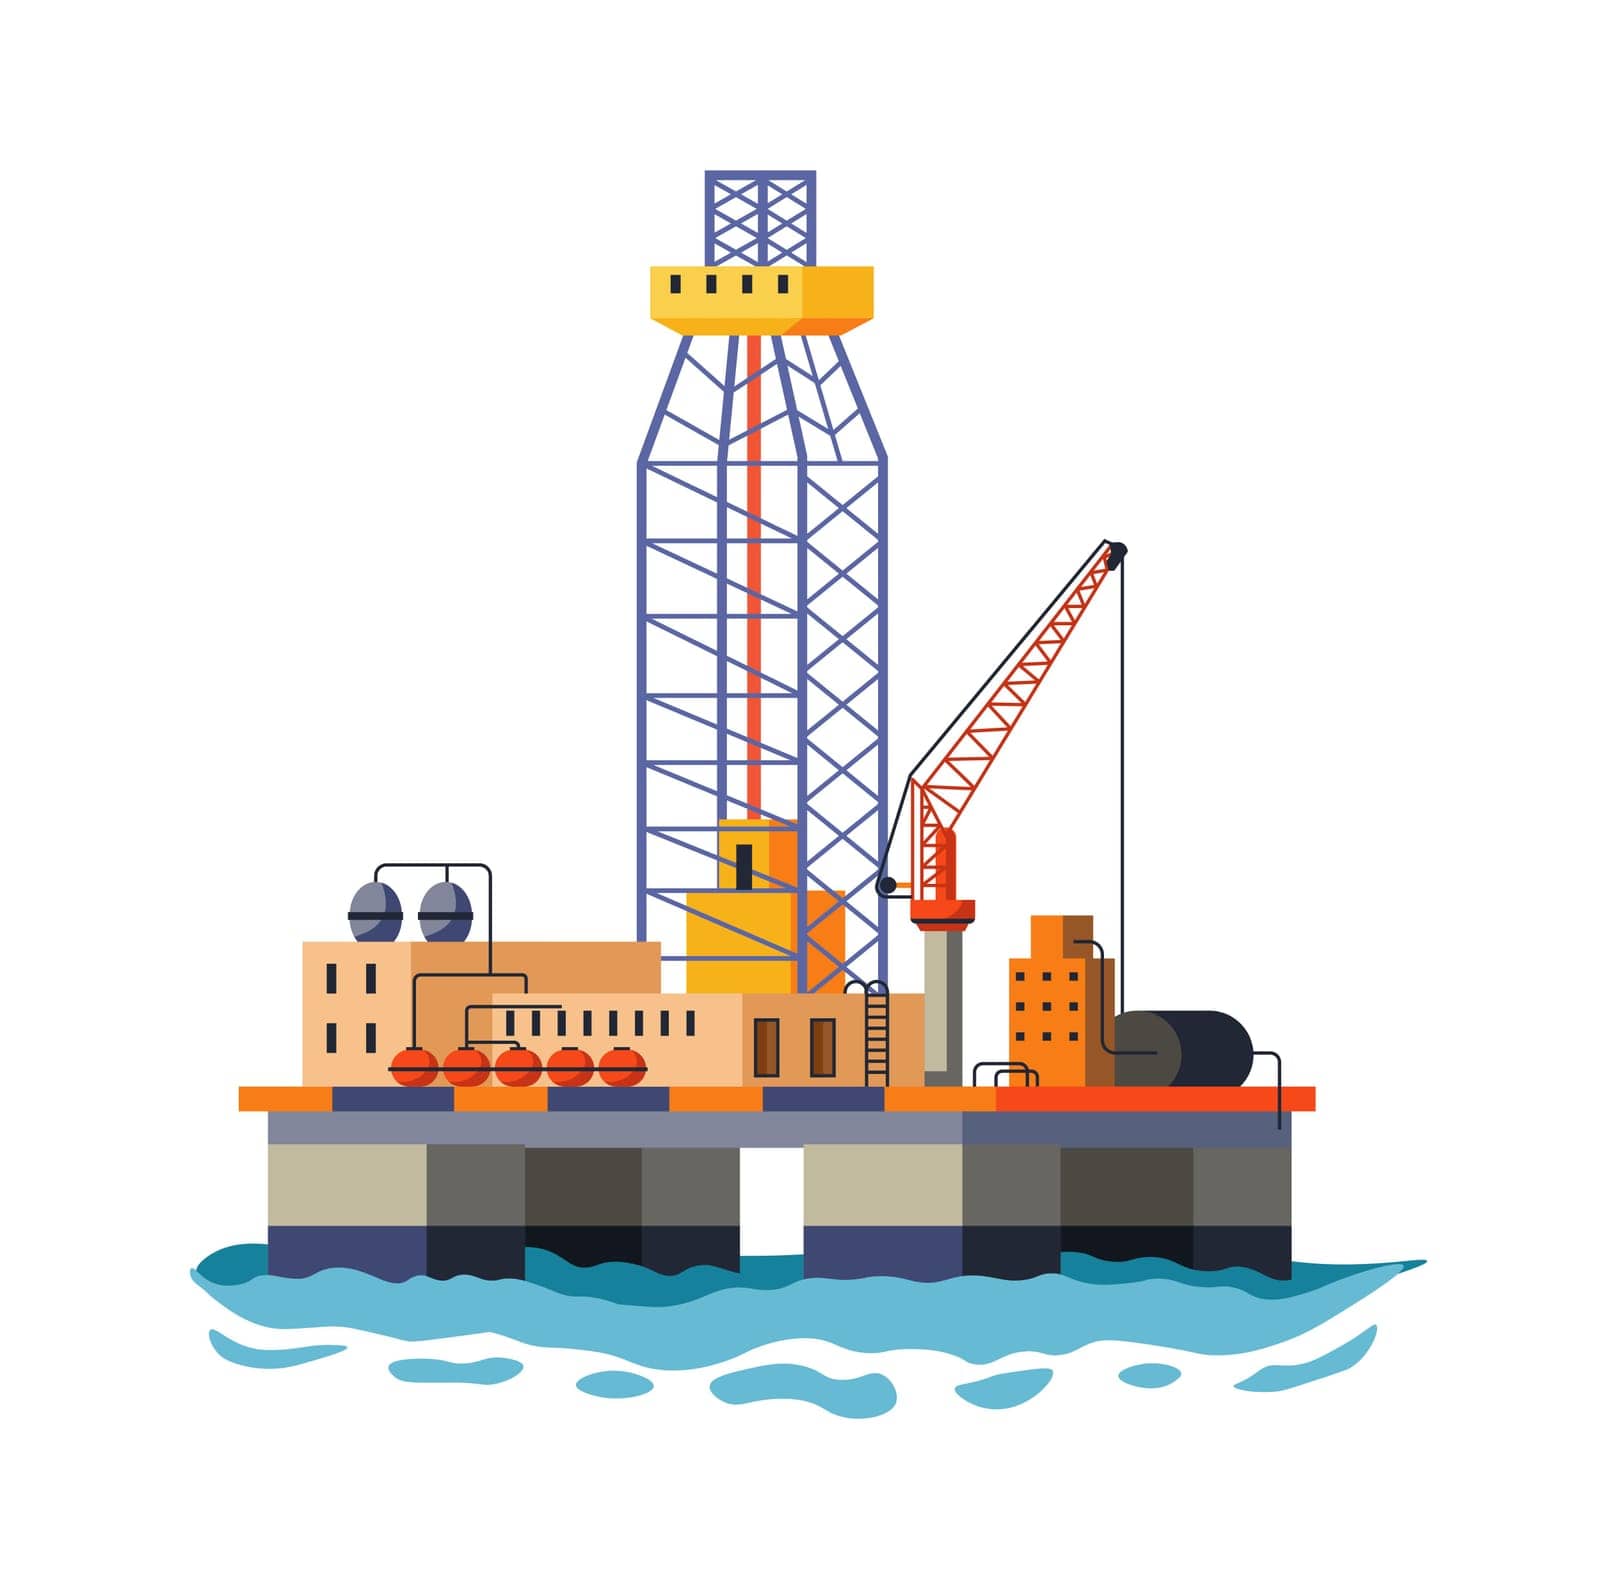 Marine Drilling Platform Vector Art by Sonulkaster